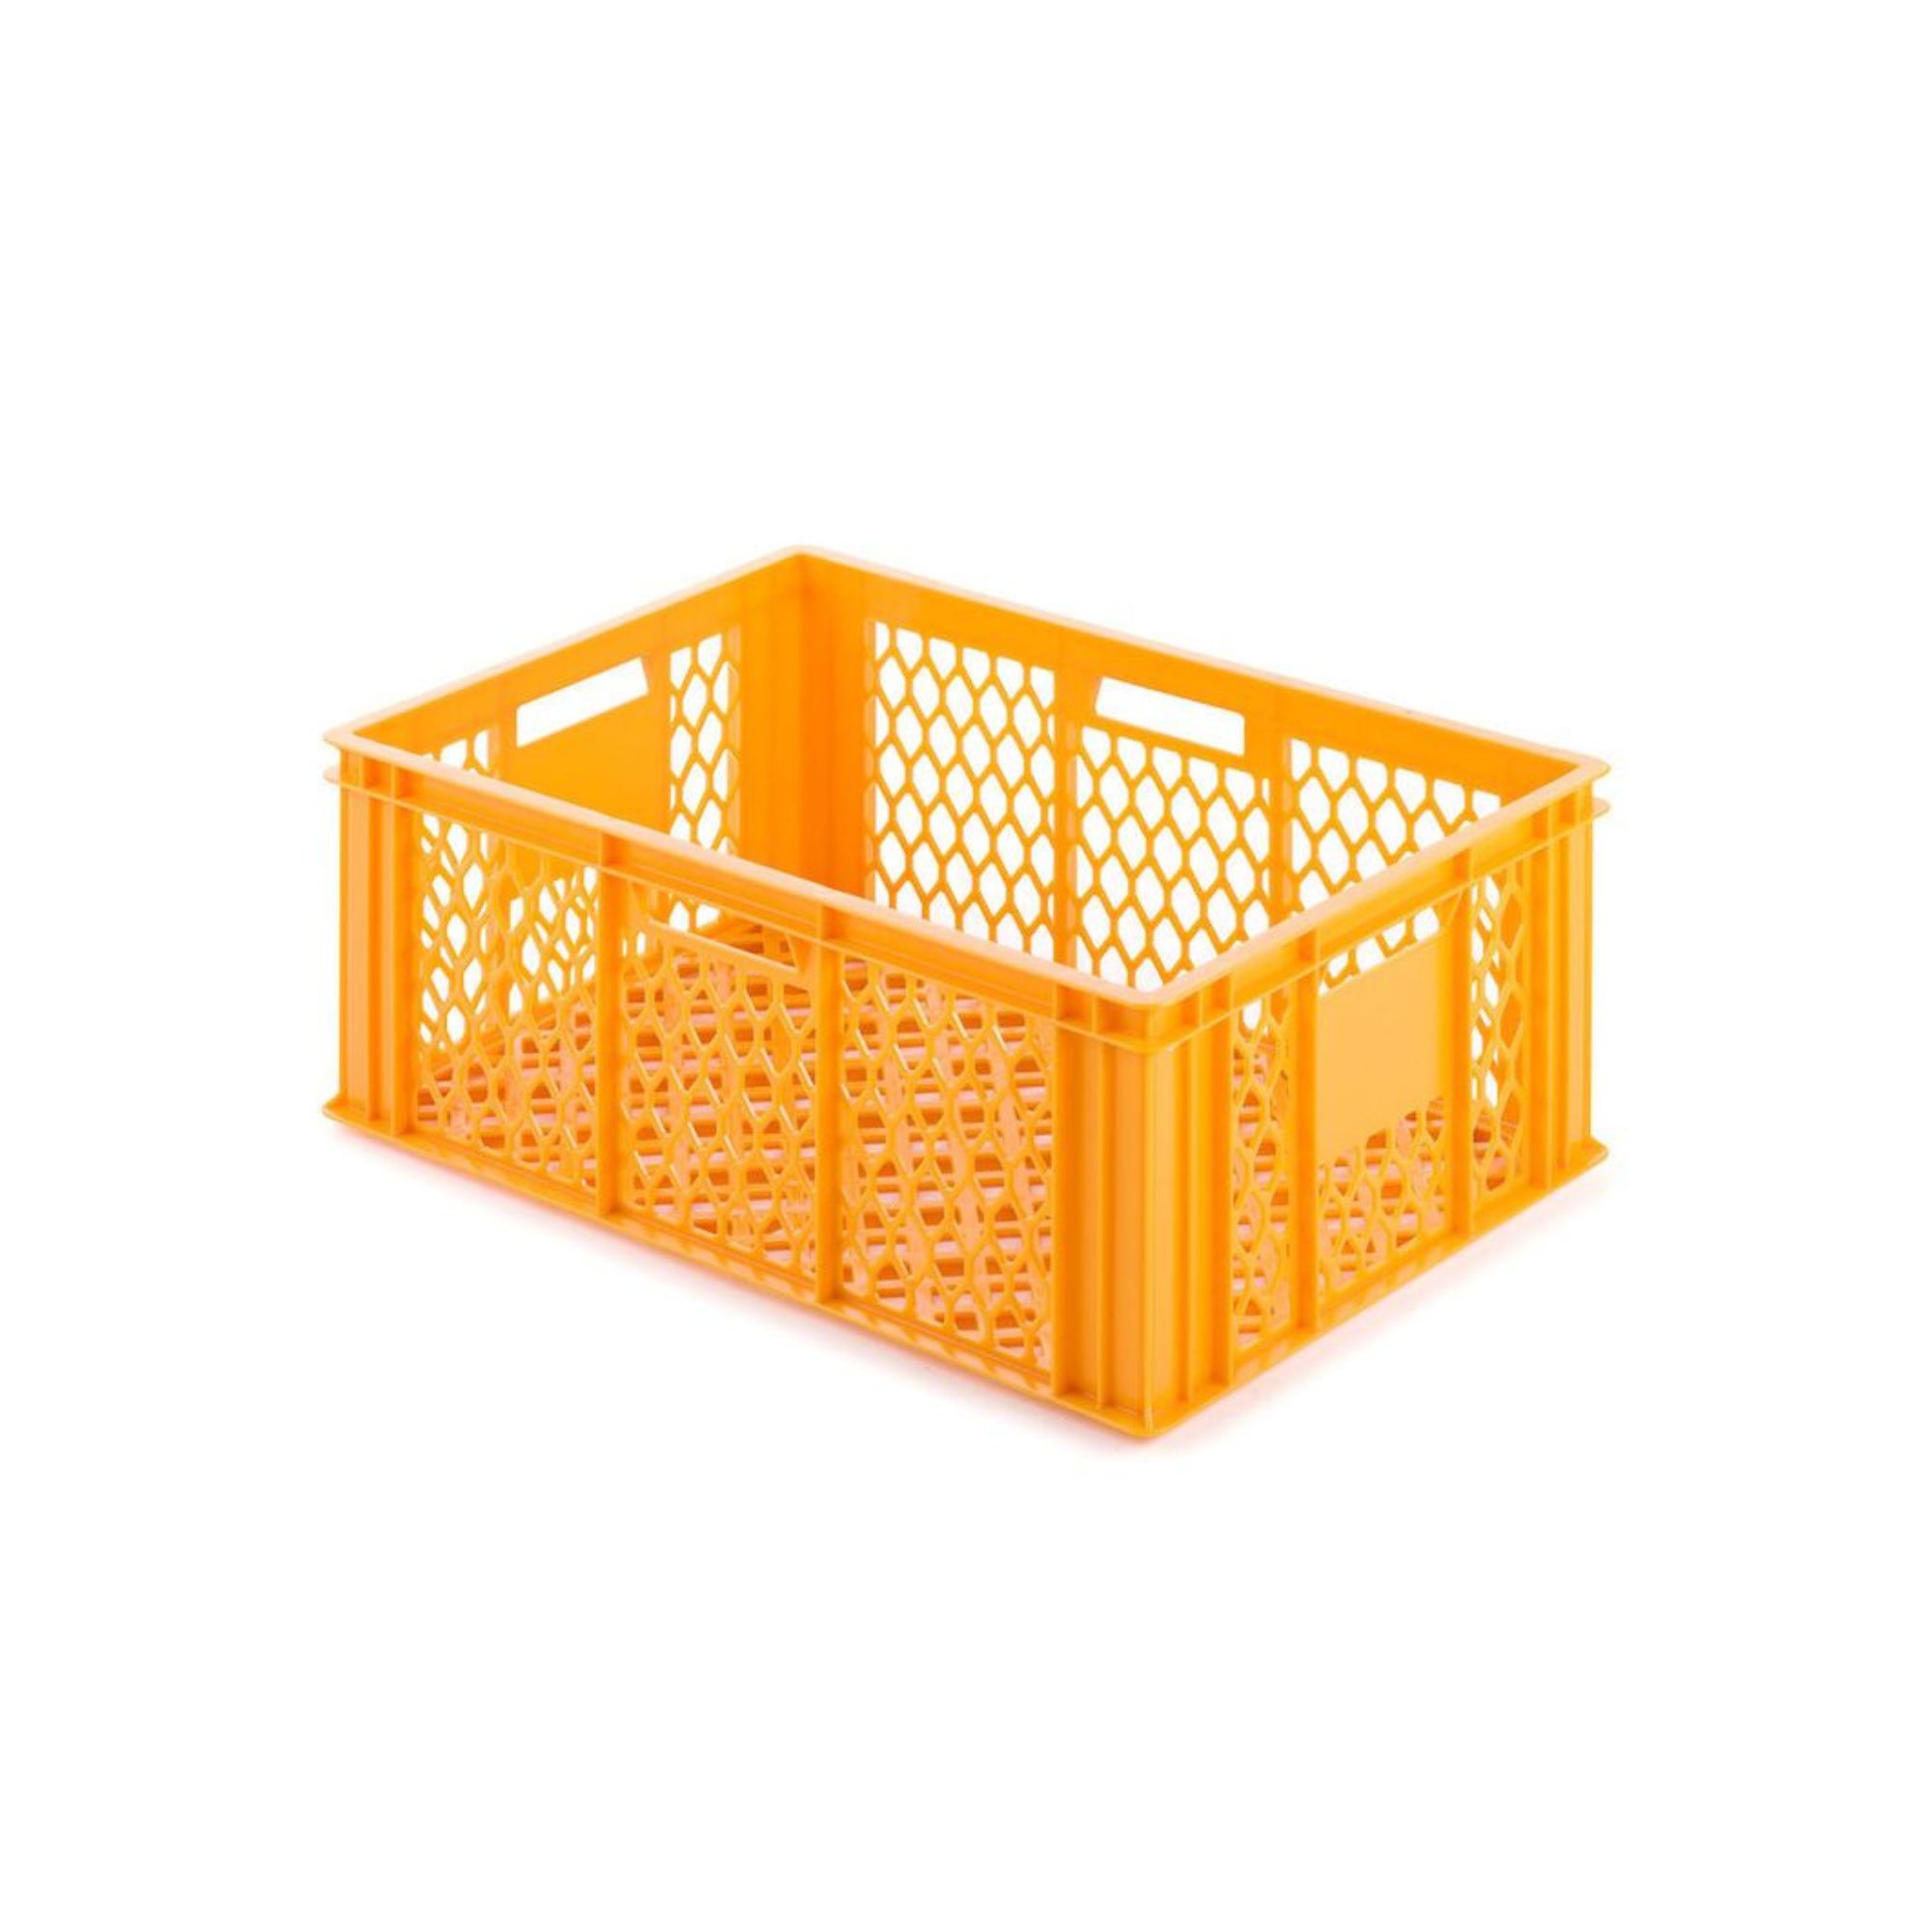 Eurobehälter Bäcker- & Konditorenkasten | HxBxT 25x40x60 | 49 Liter | Gelb-Orange | Brötchenkiste, stapelbare Bäckerkiste